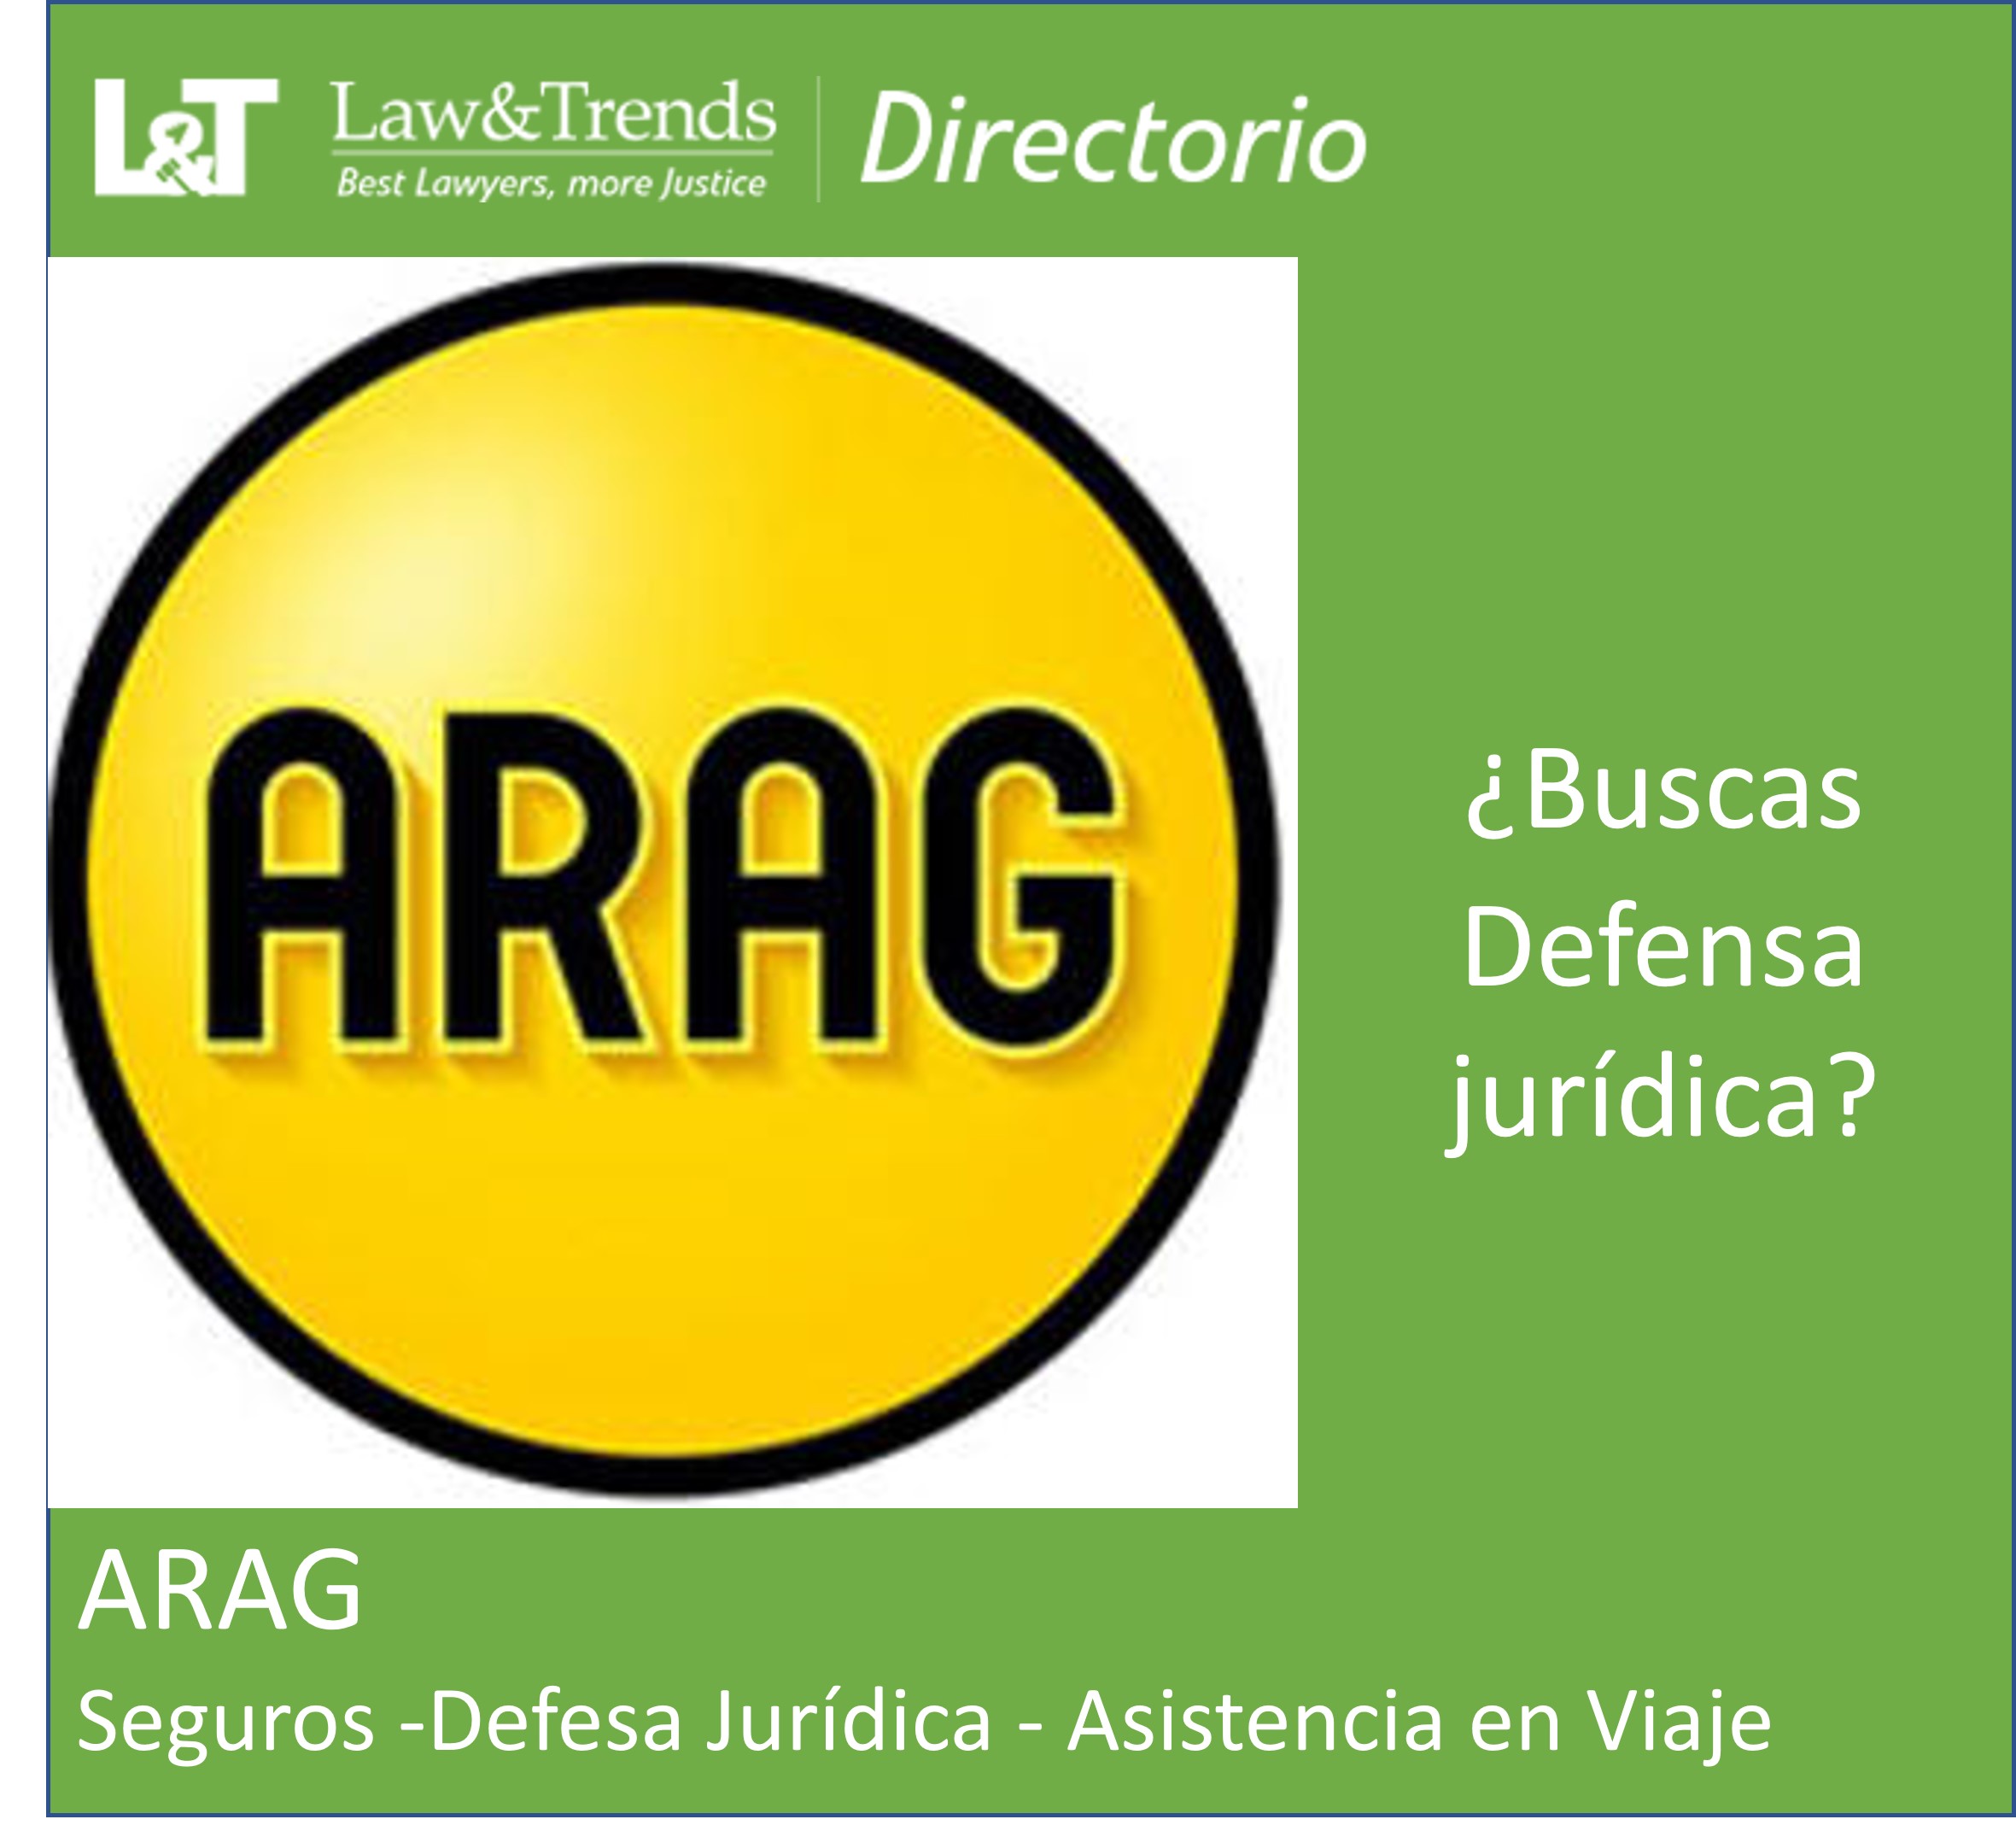 Arag defensa Jurídica abogados madrid
